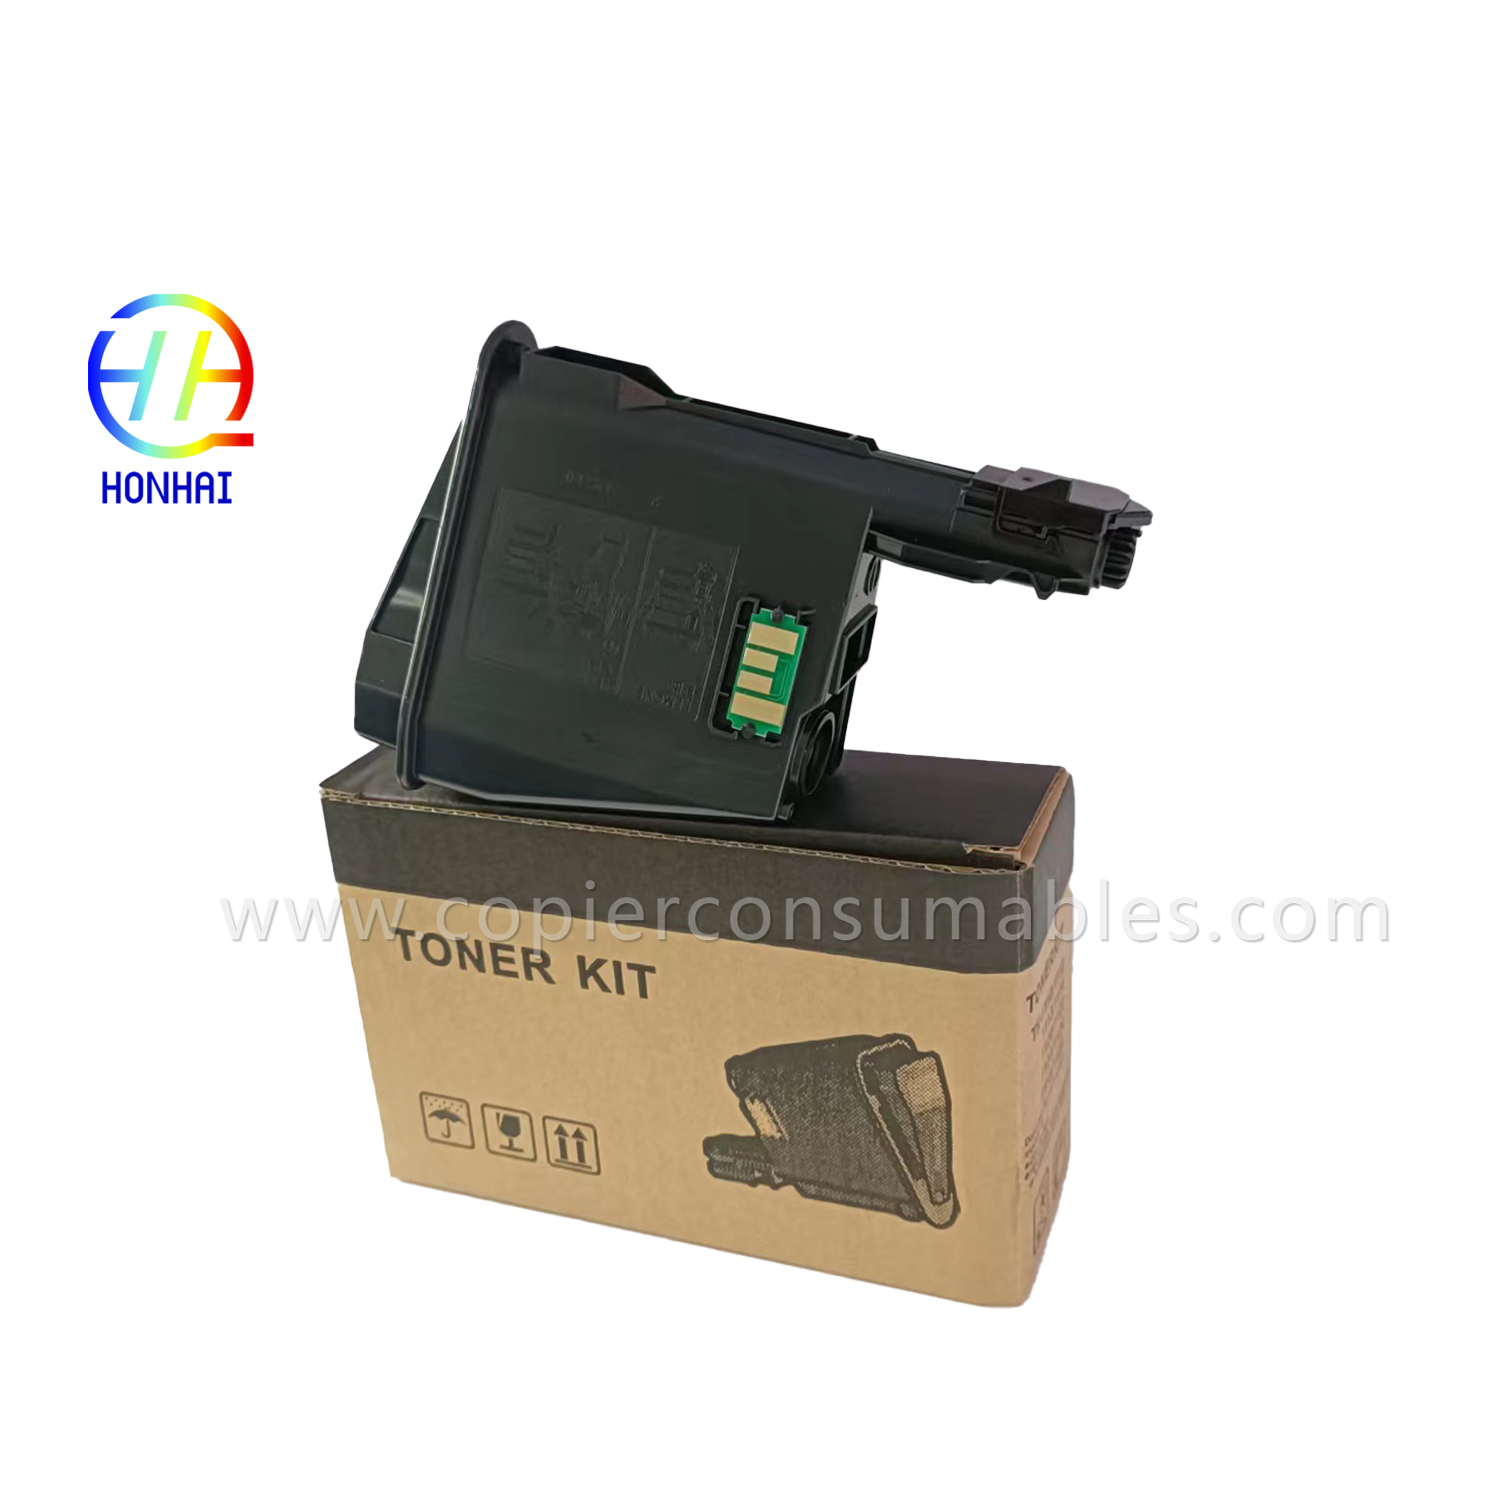 Toner kaseta za Kyocera ECOSYS FS-1040 1060DN 1020MFP 1041 1120MFP 1025MFP 1061DN